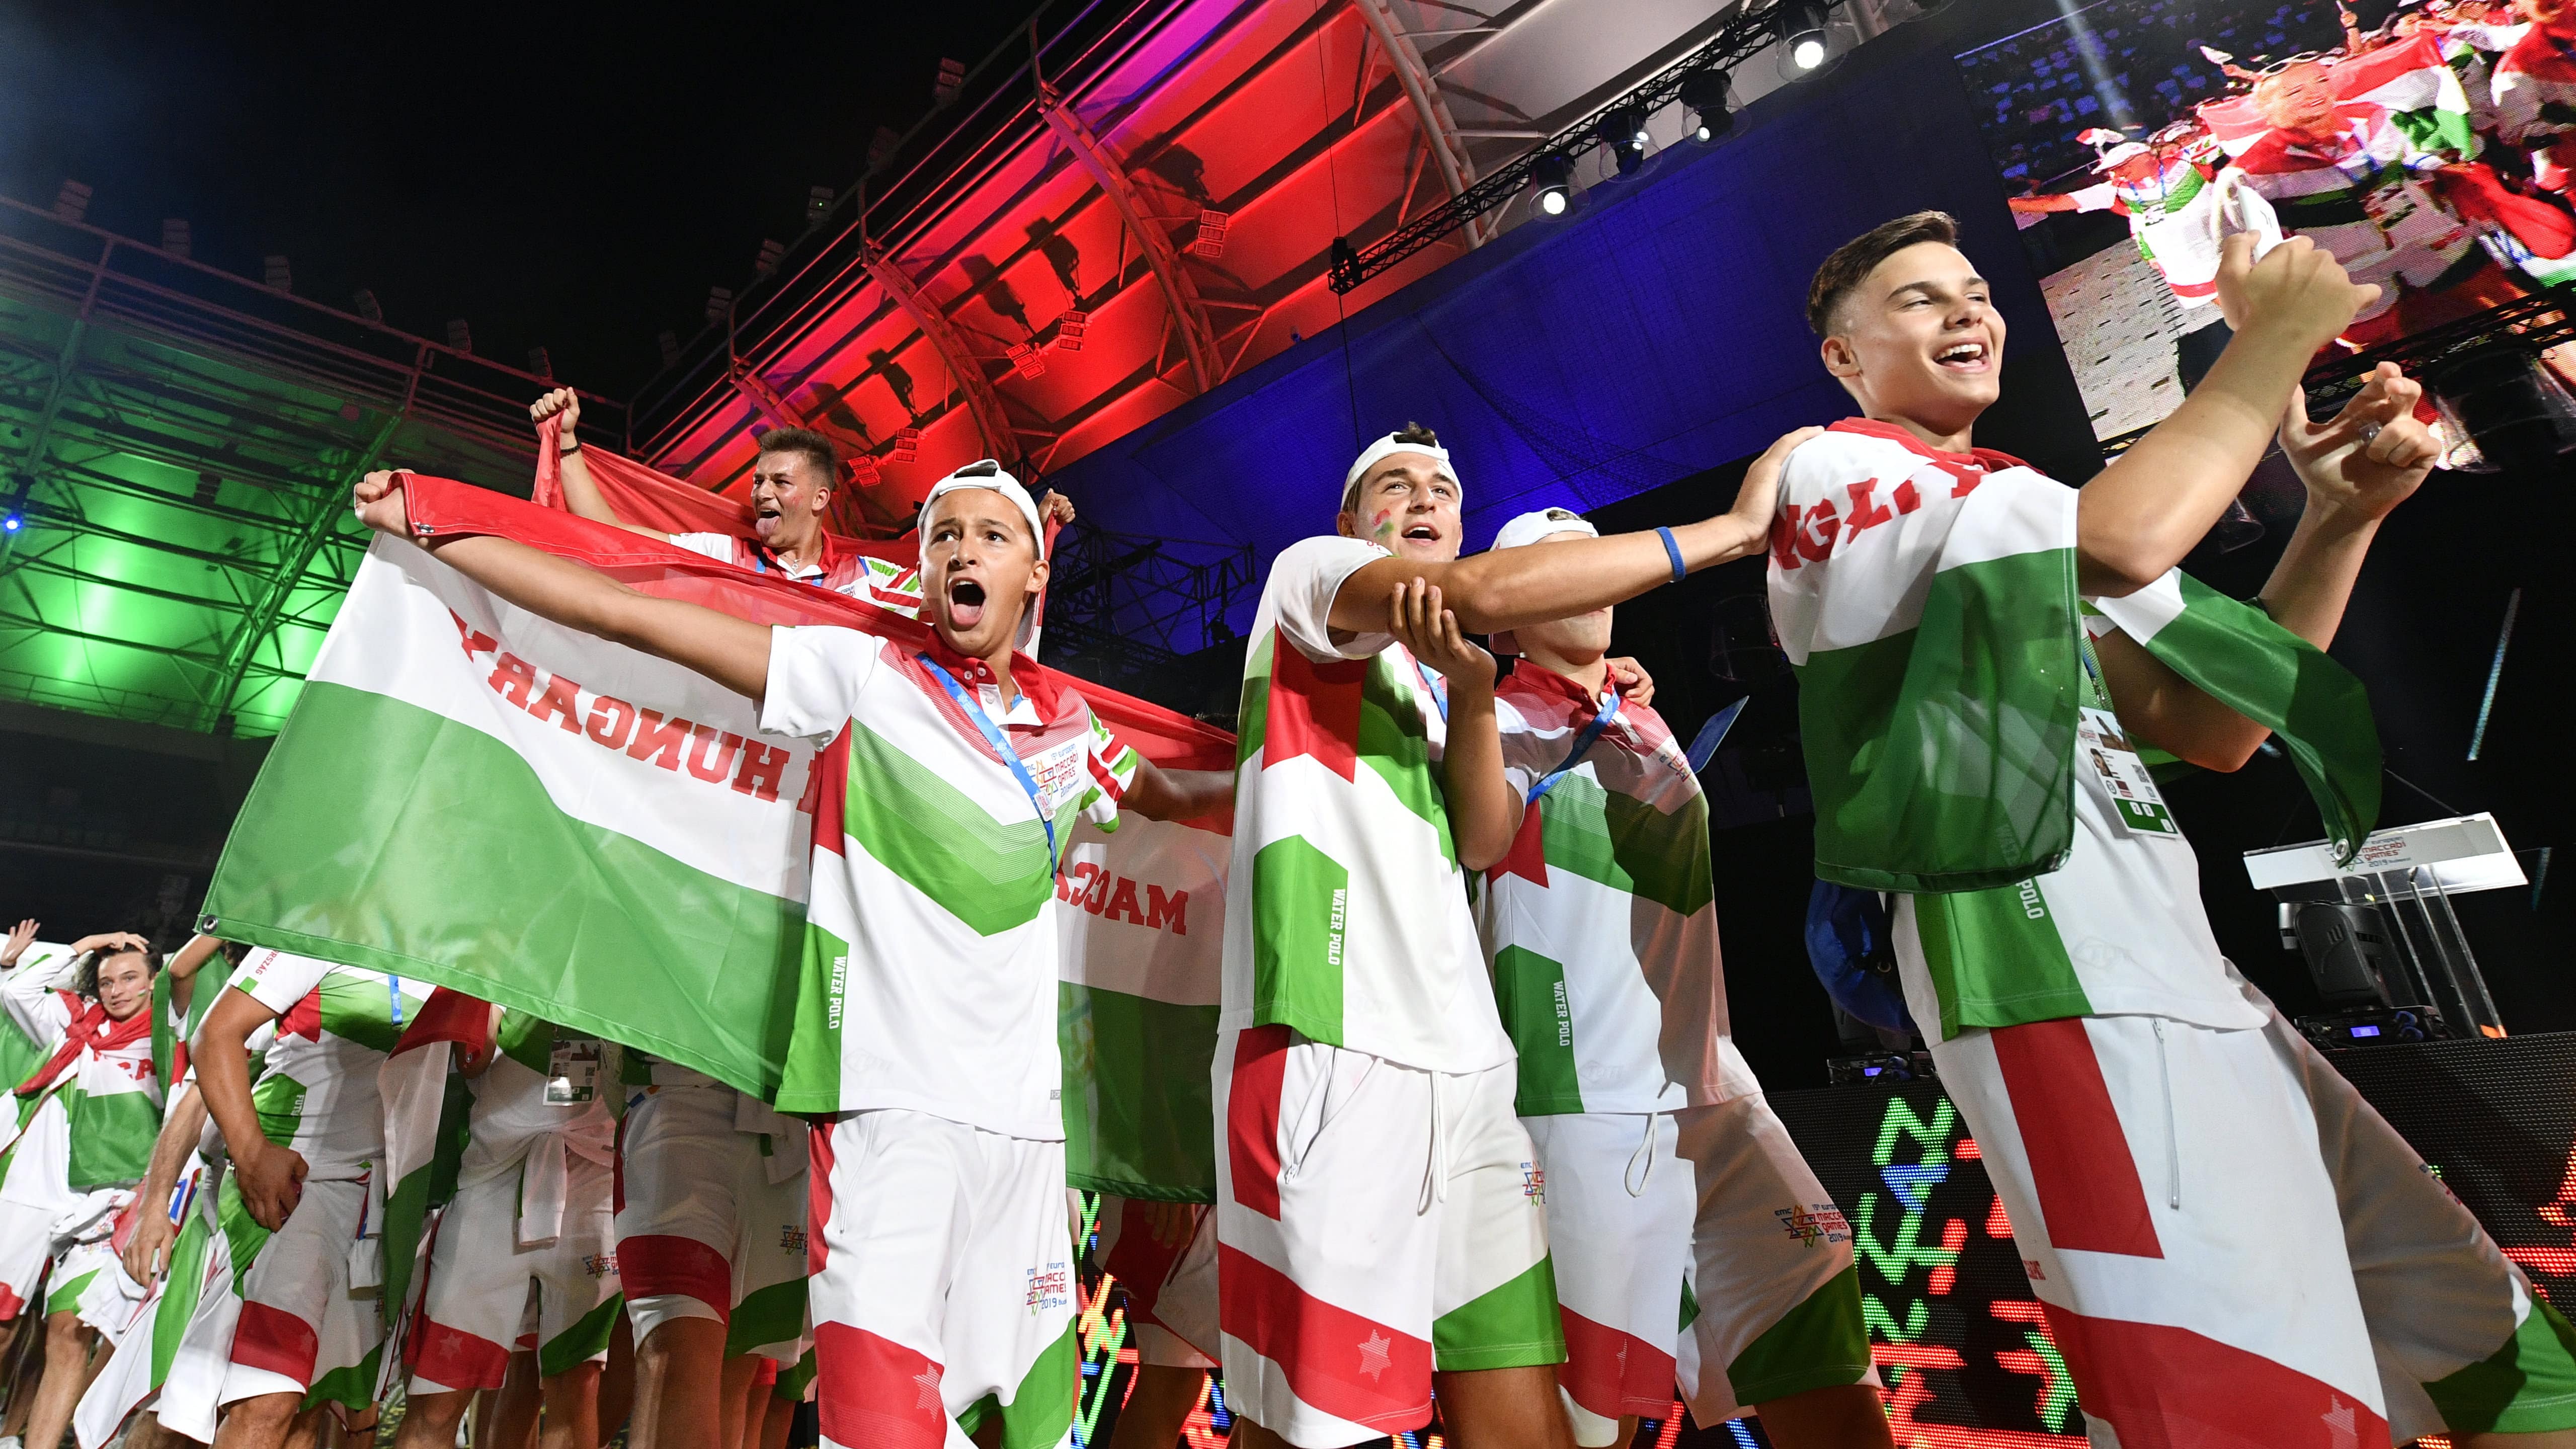 यूरोपीय मकाबी खेलों में हंगरी दूसरा सबसे सफल रहा